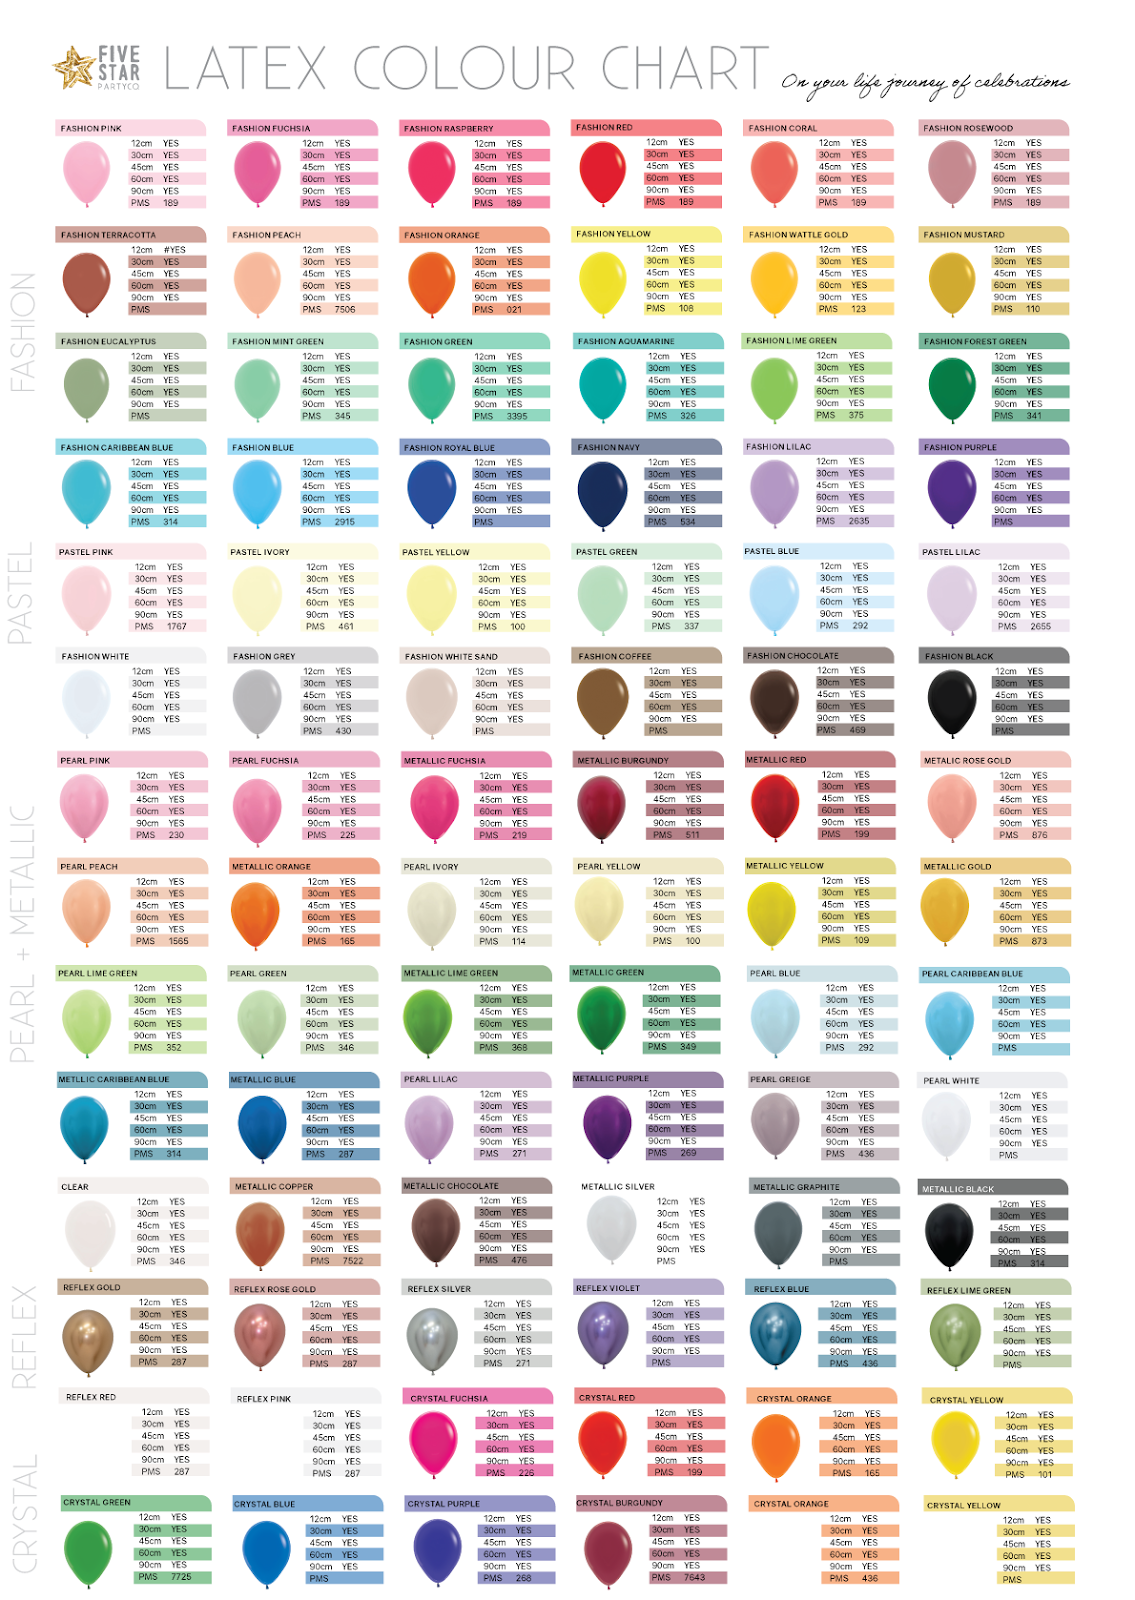 Sempertex Colour Chart, Balloons Sydney